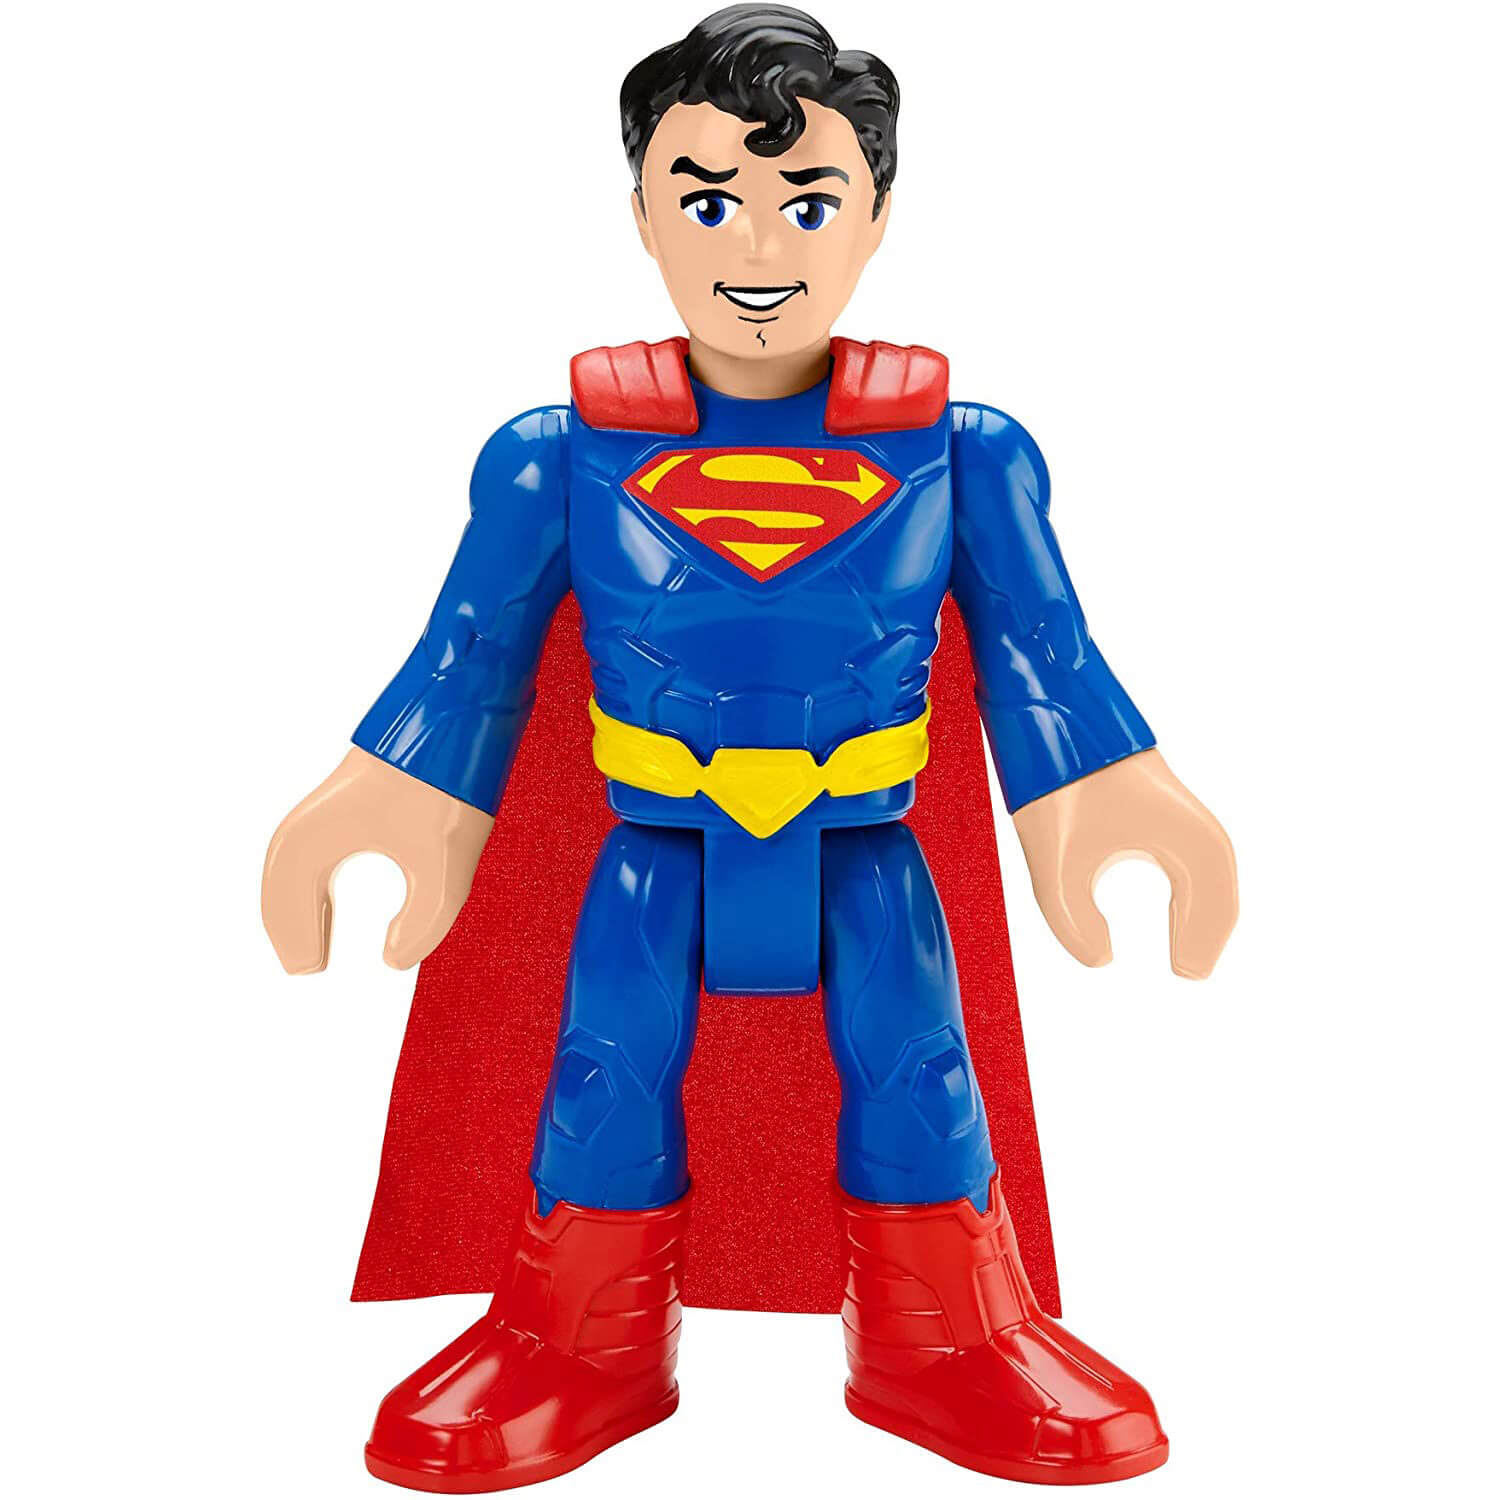 Imaginext DC Super Friends Superman XL Figure